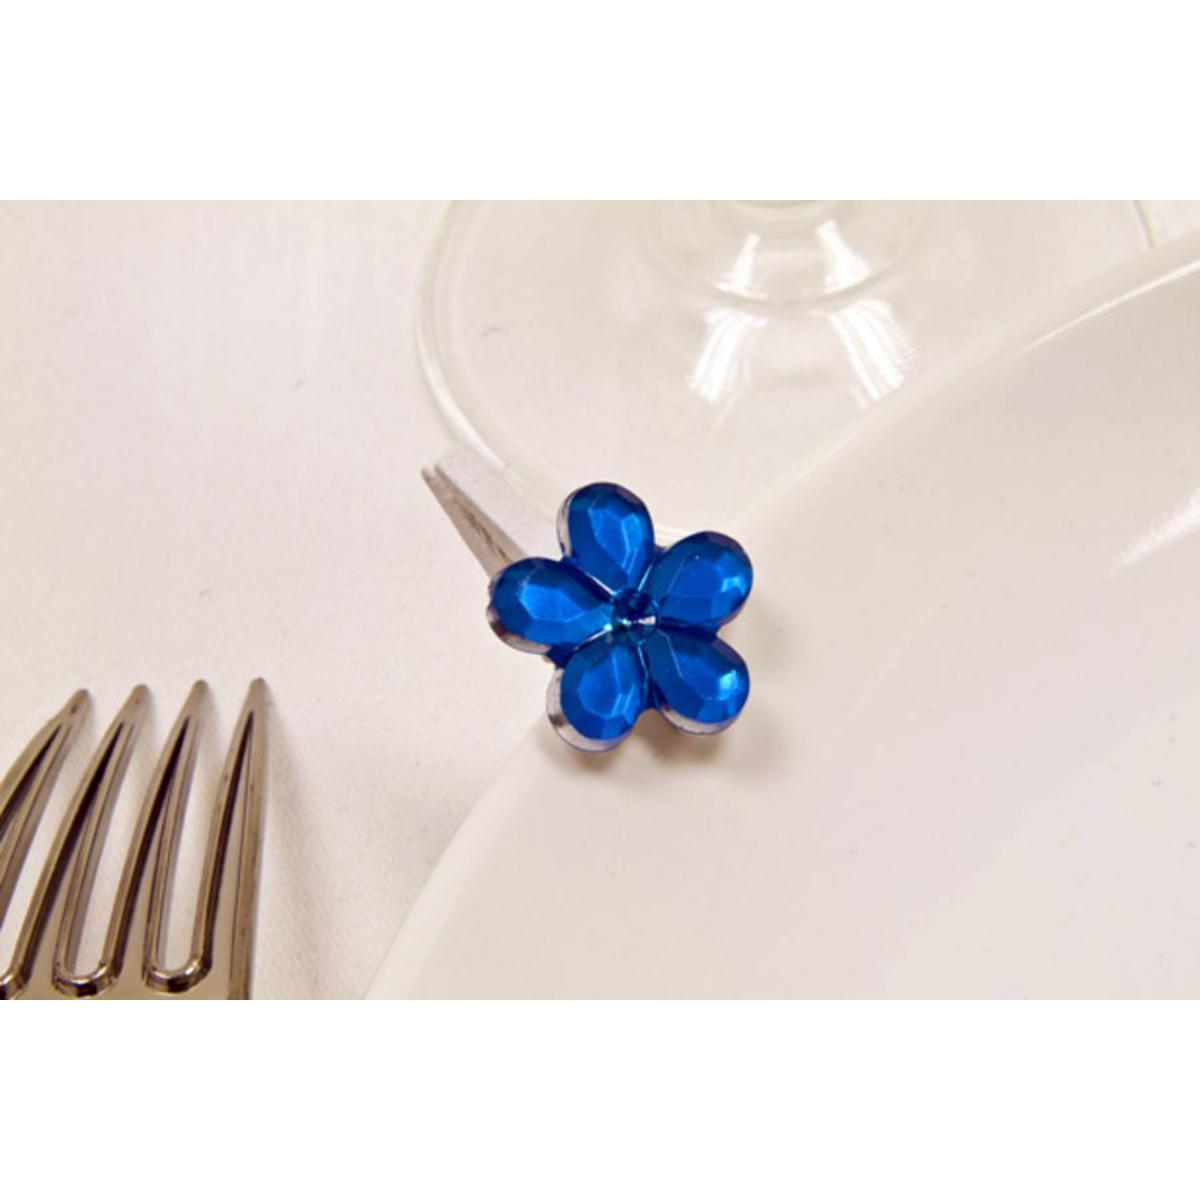 10 pinces décoratives avec fleur - Bois et plastique - 2 x 3 cm - Bleu turquoise